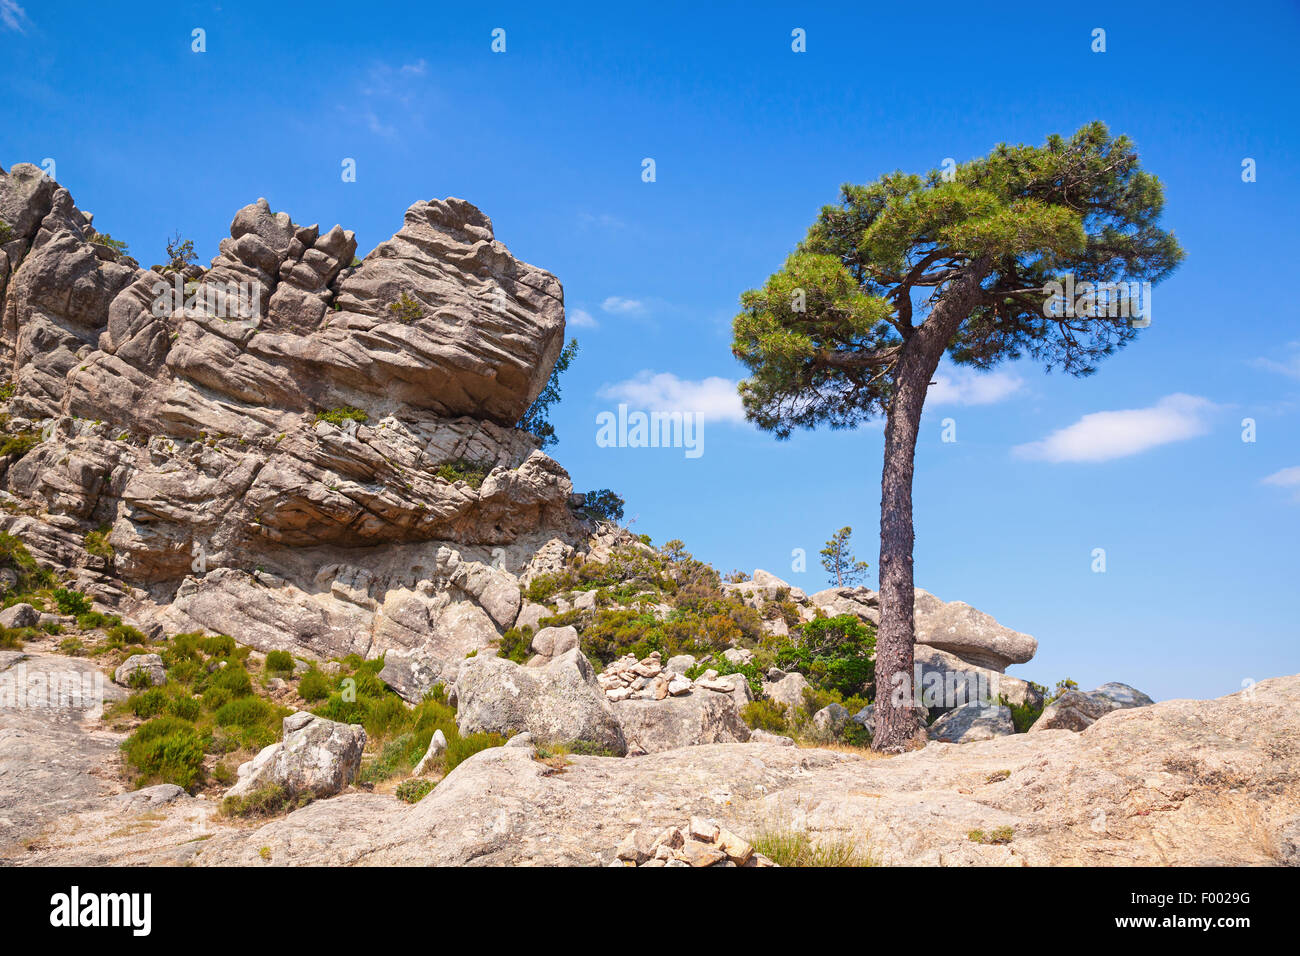 Nature de l'île de Corse, paysage de montagne avec pine tree growing on rock Banque D'Images